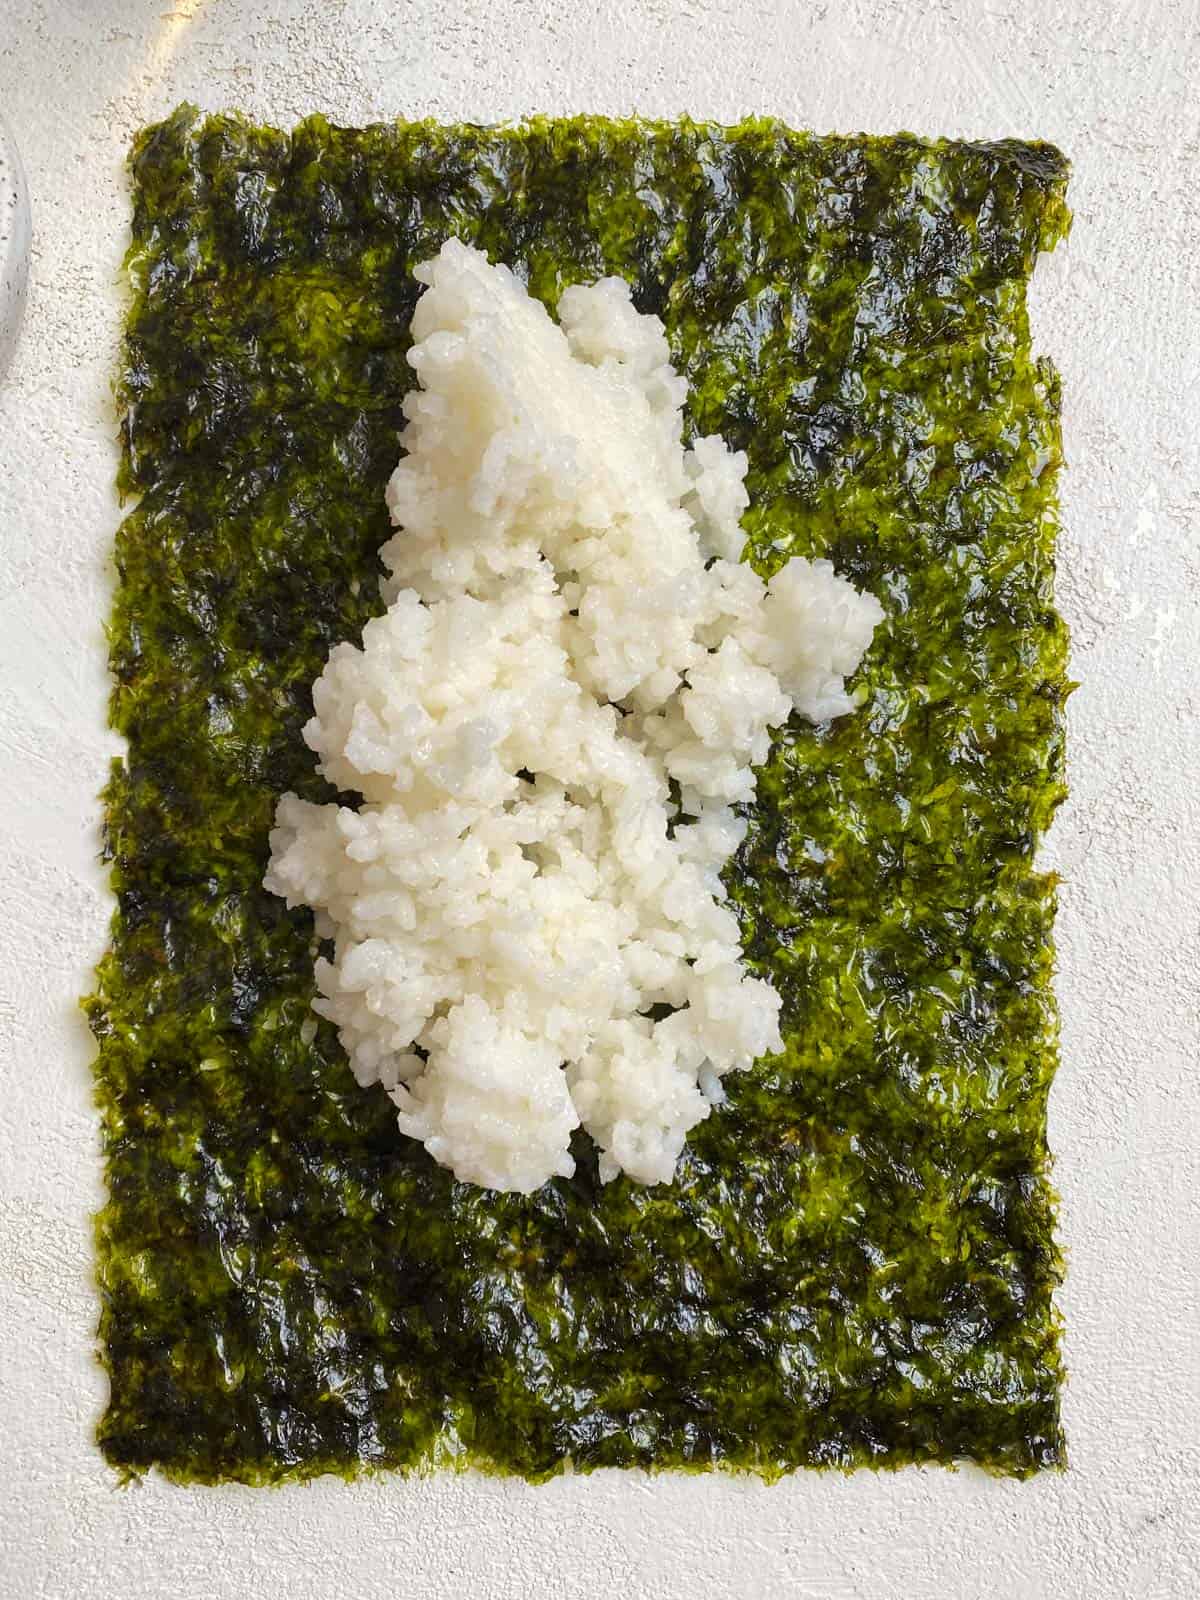 process shot of adding sushi rice to seaweed